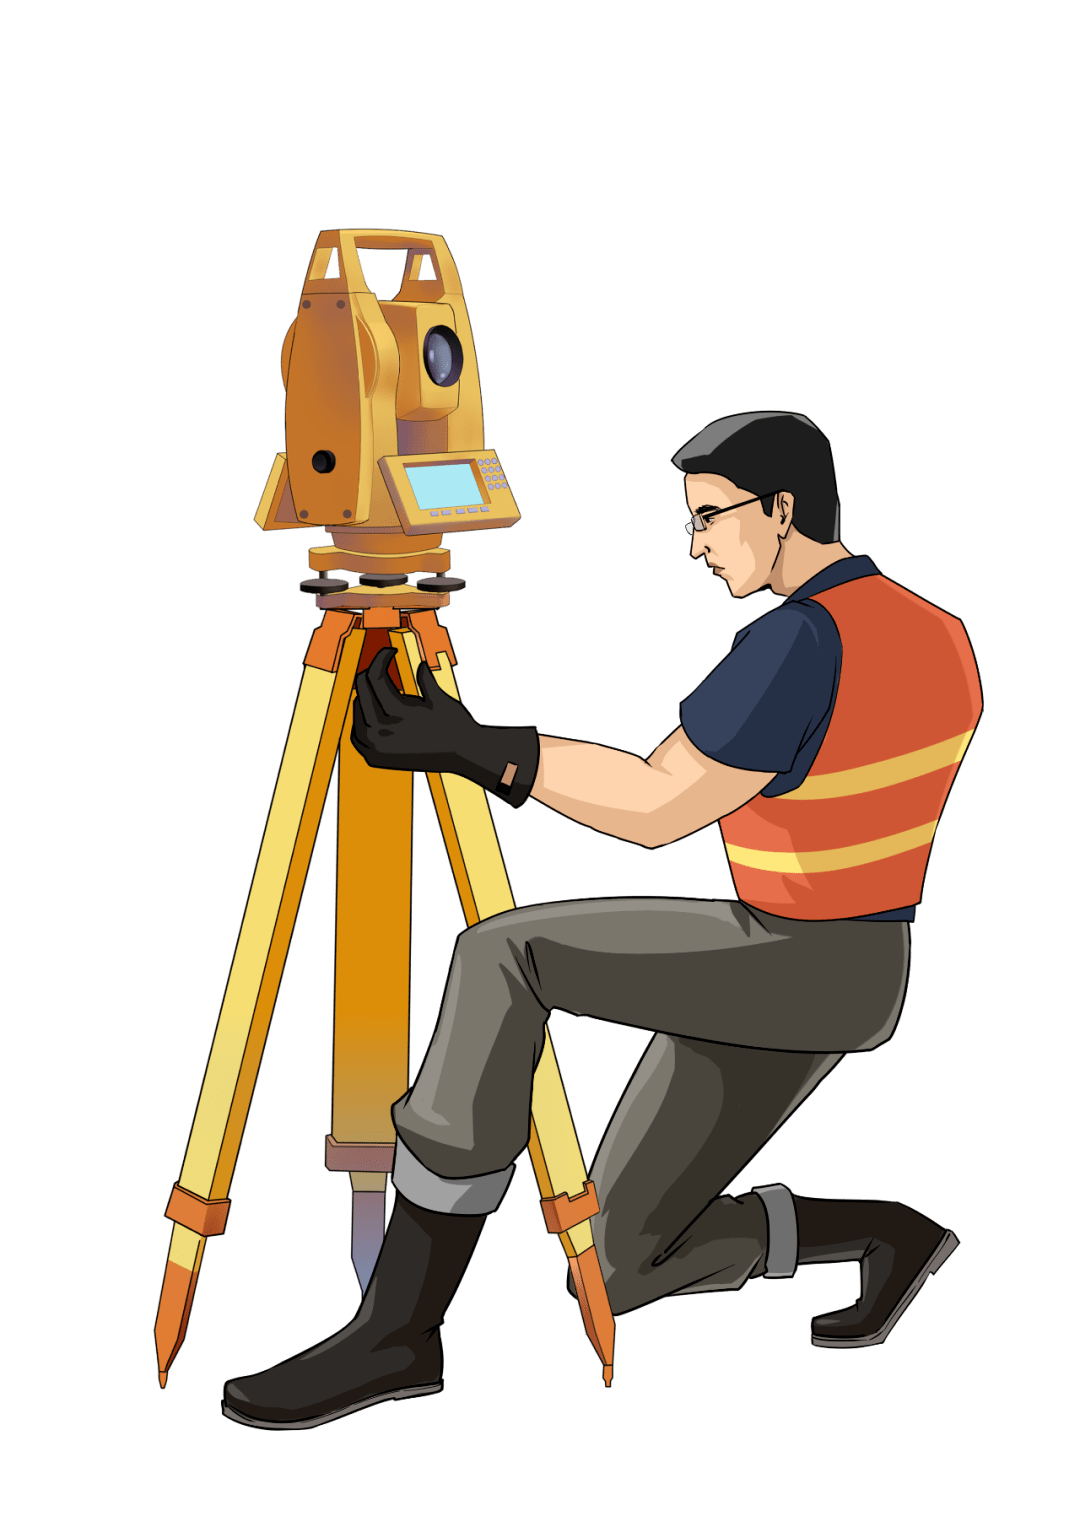 滨州测绘仪器是进行测量和绘图的工具，广泛应用于各个领域，如建筑、交通、水利、农业等